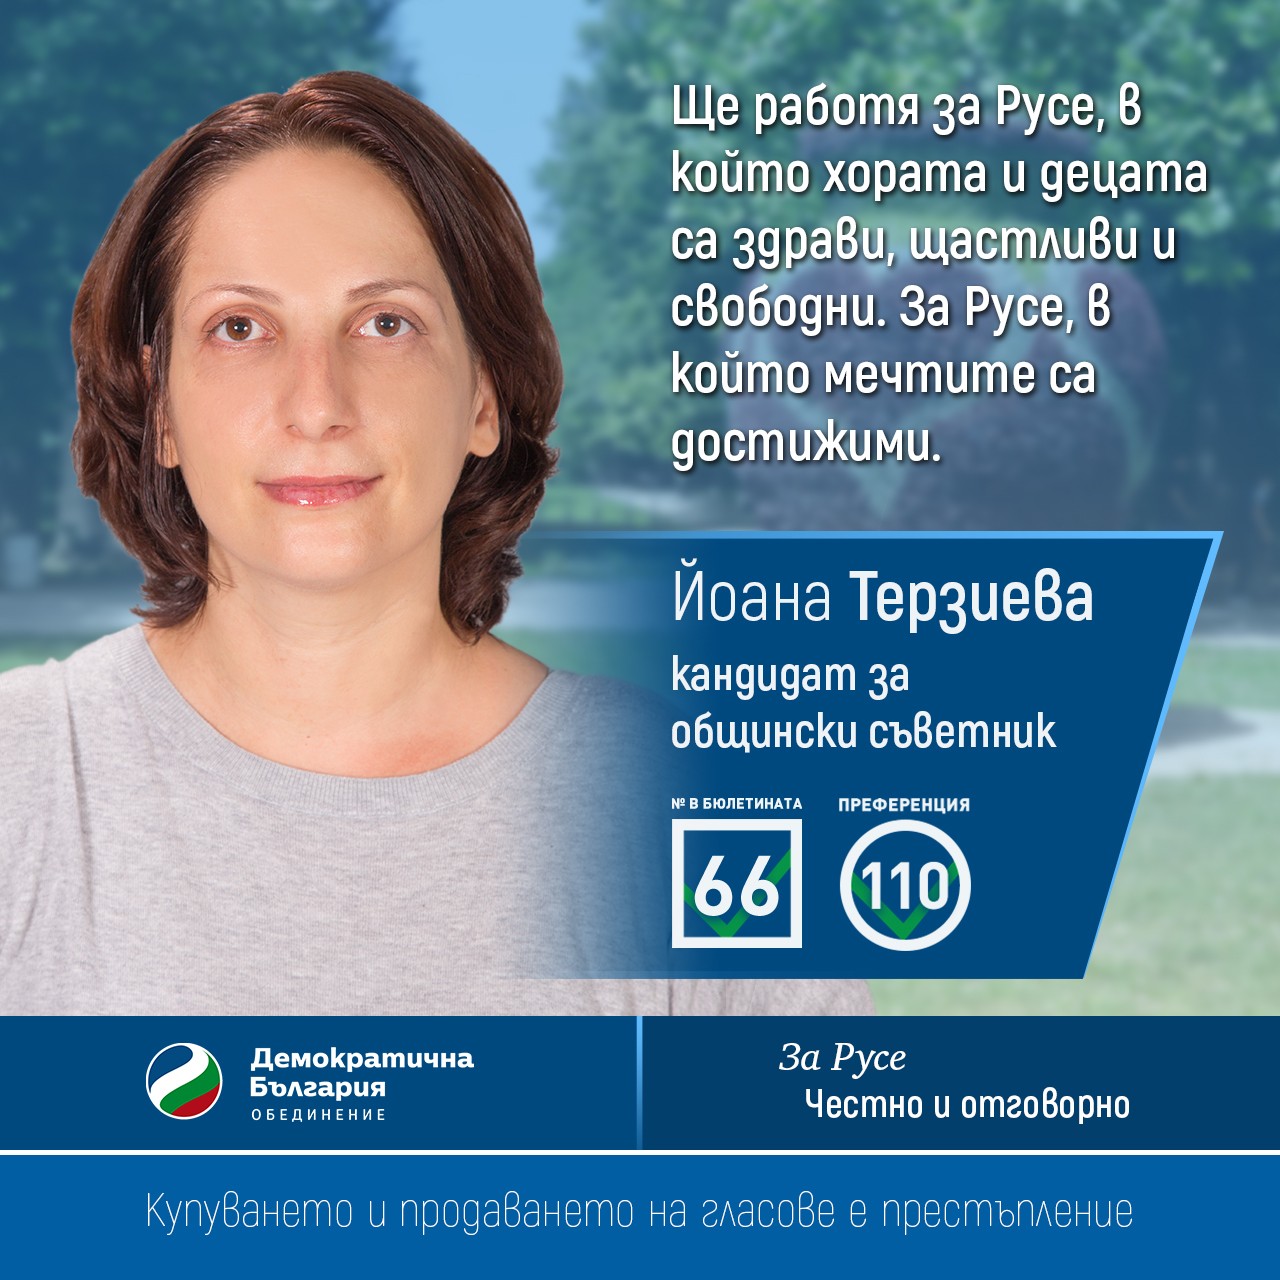 Демократична България с  дискусия за детските площадки в Парка